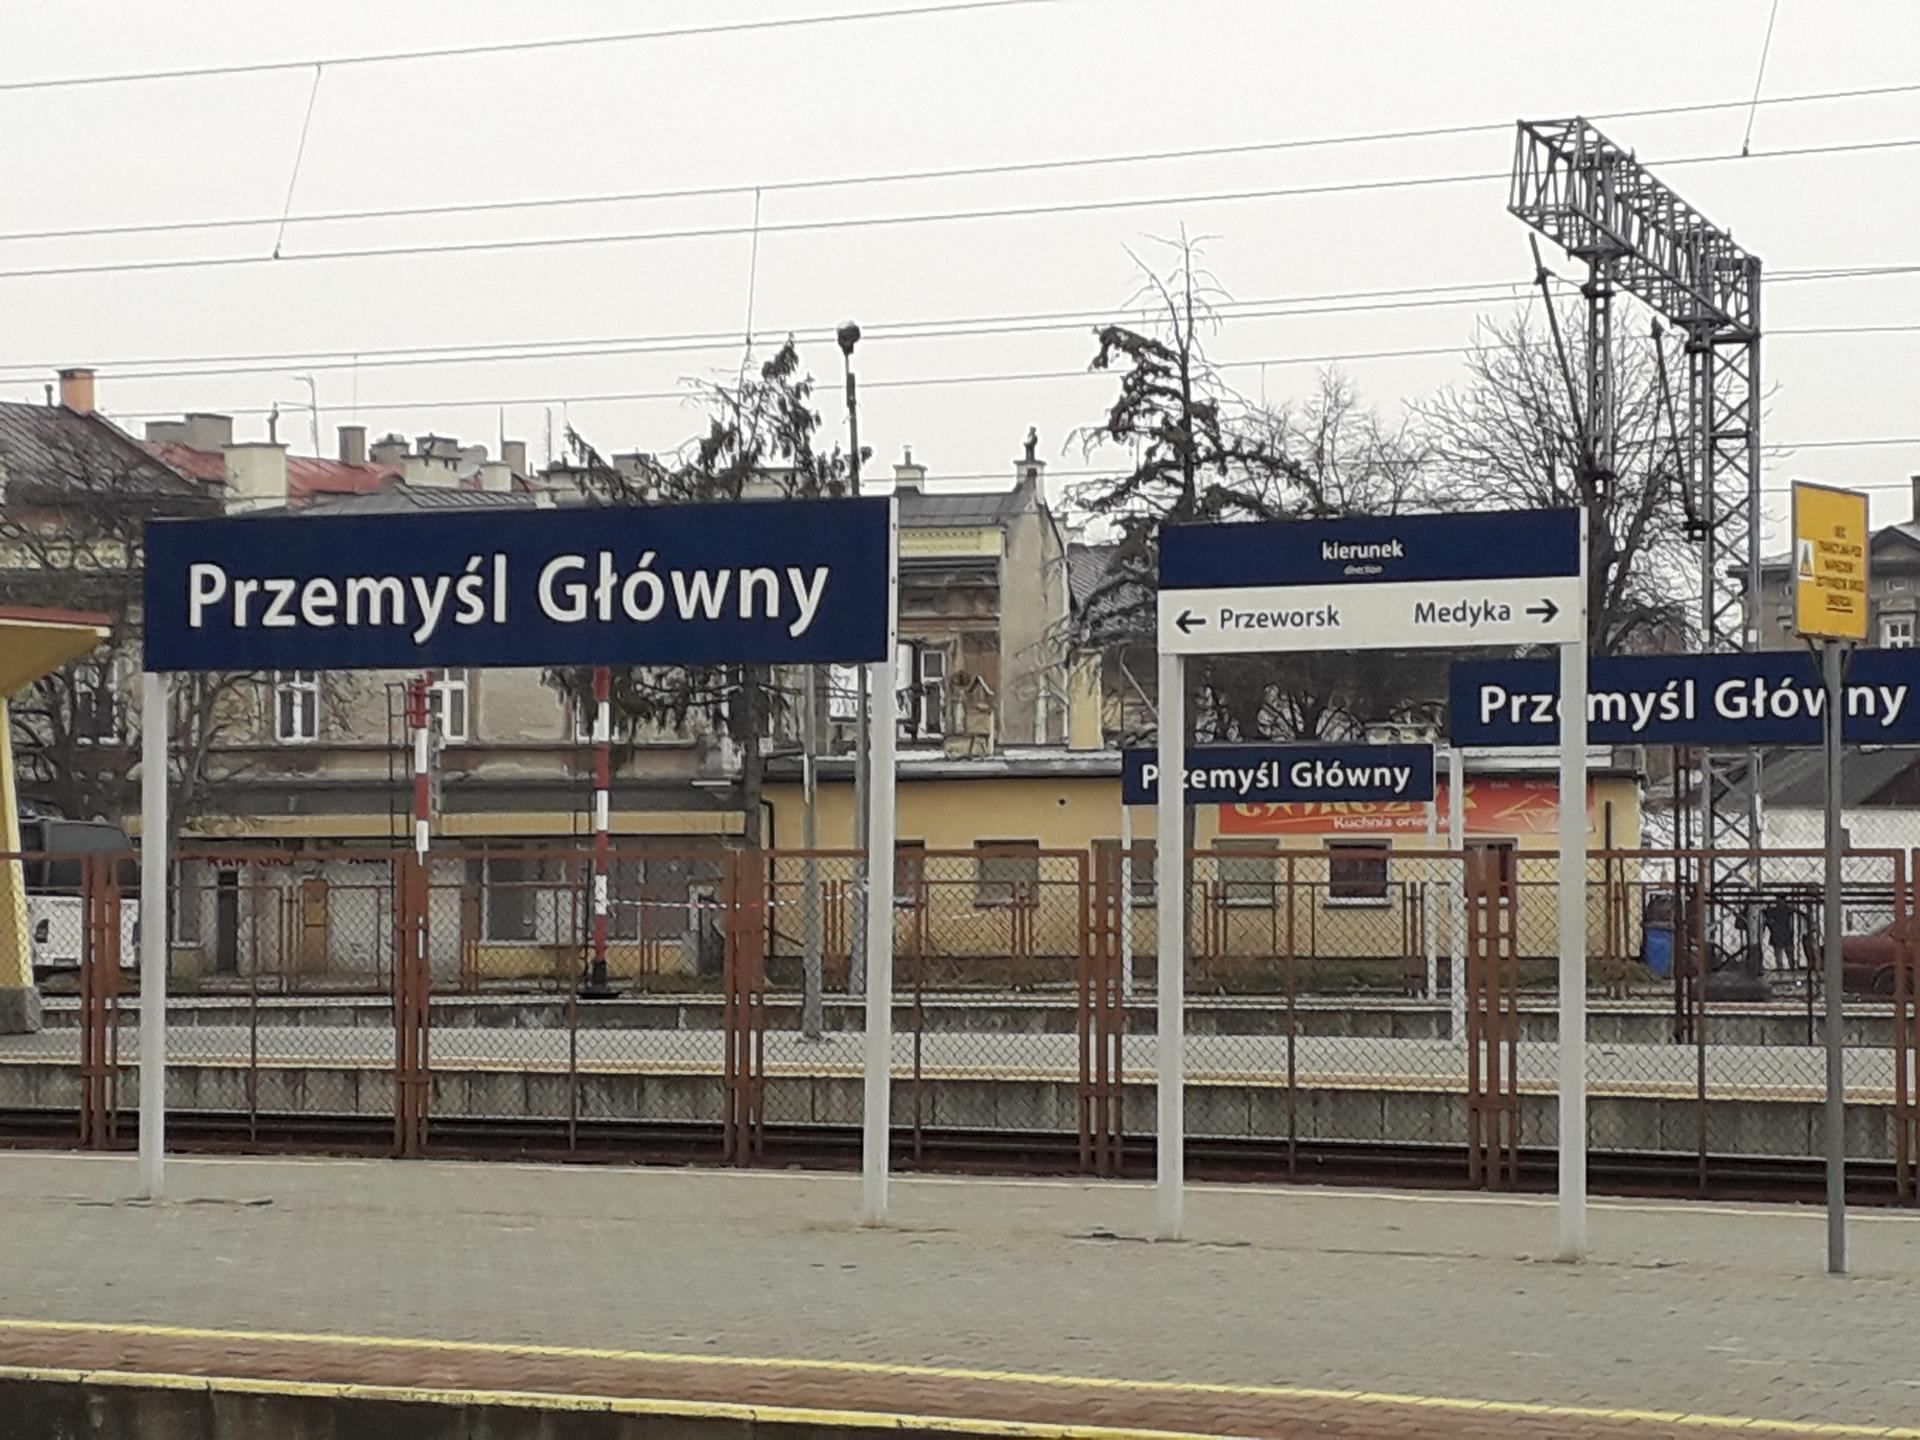 Як евакуйованим з України пасажирам орієнтуватися на залізничному вокзалі в Перемишлі: поради - 24 Канал